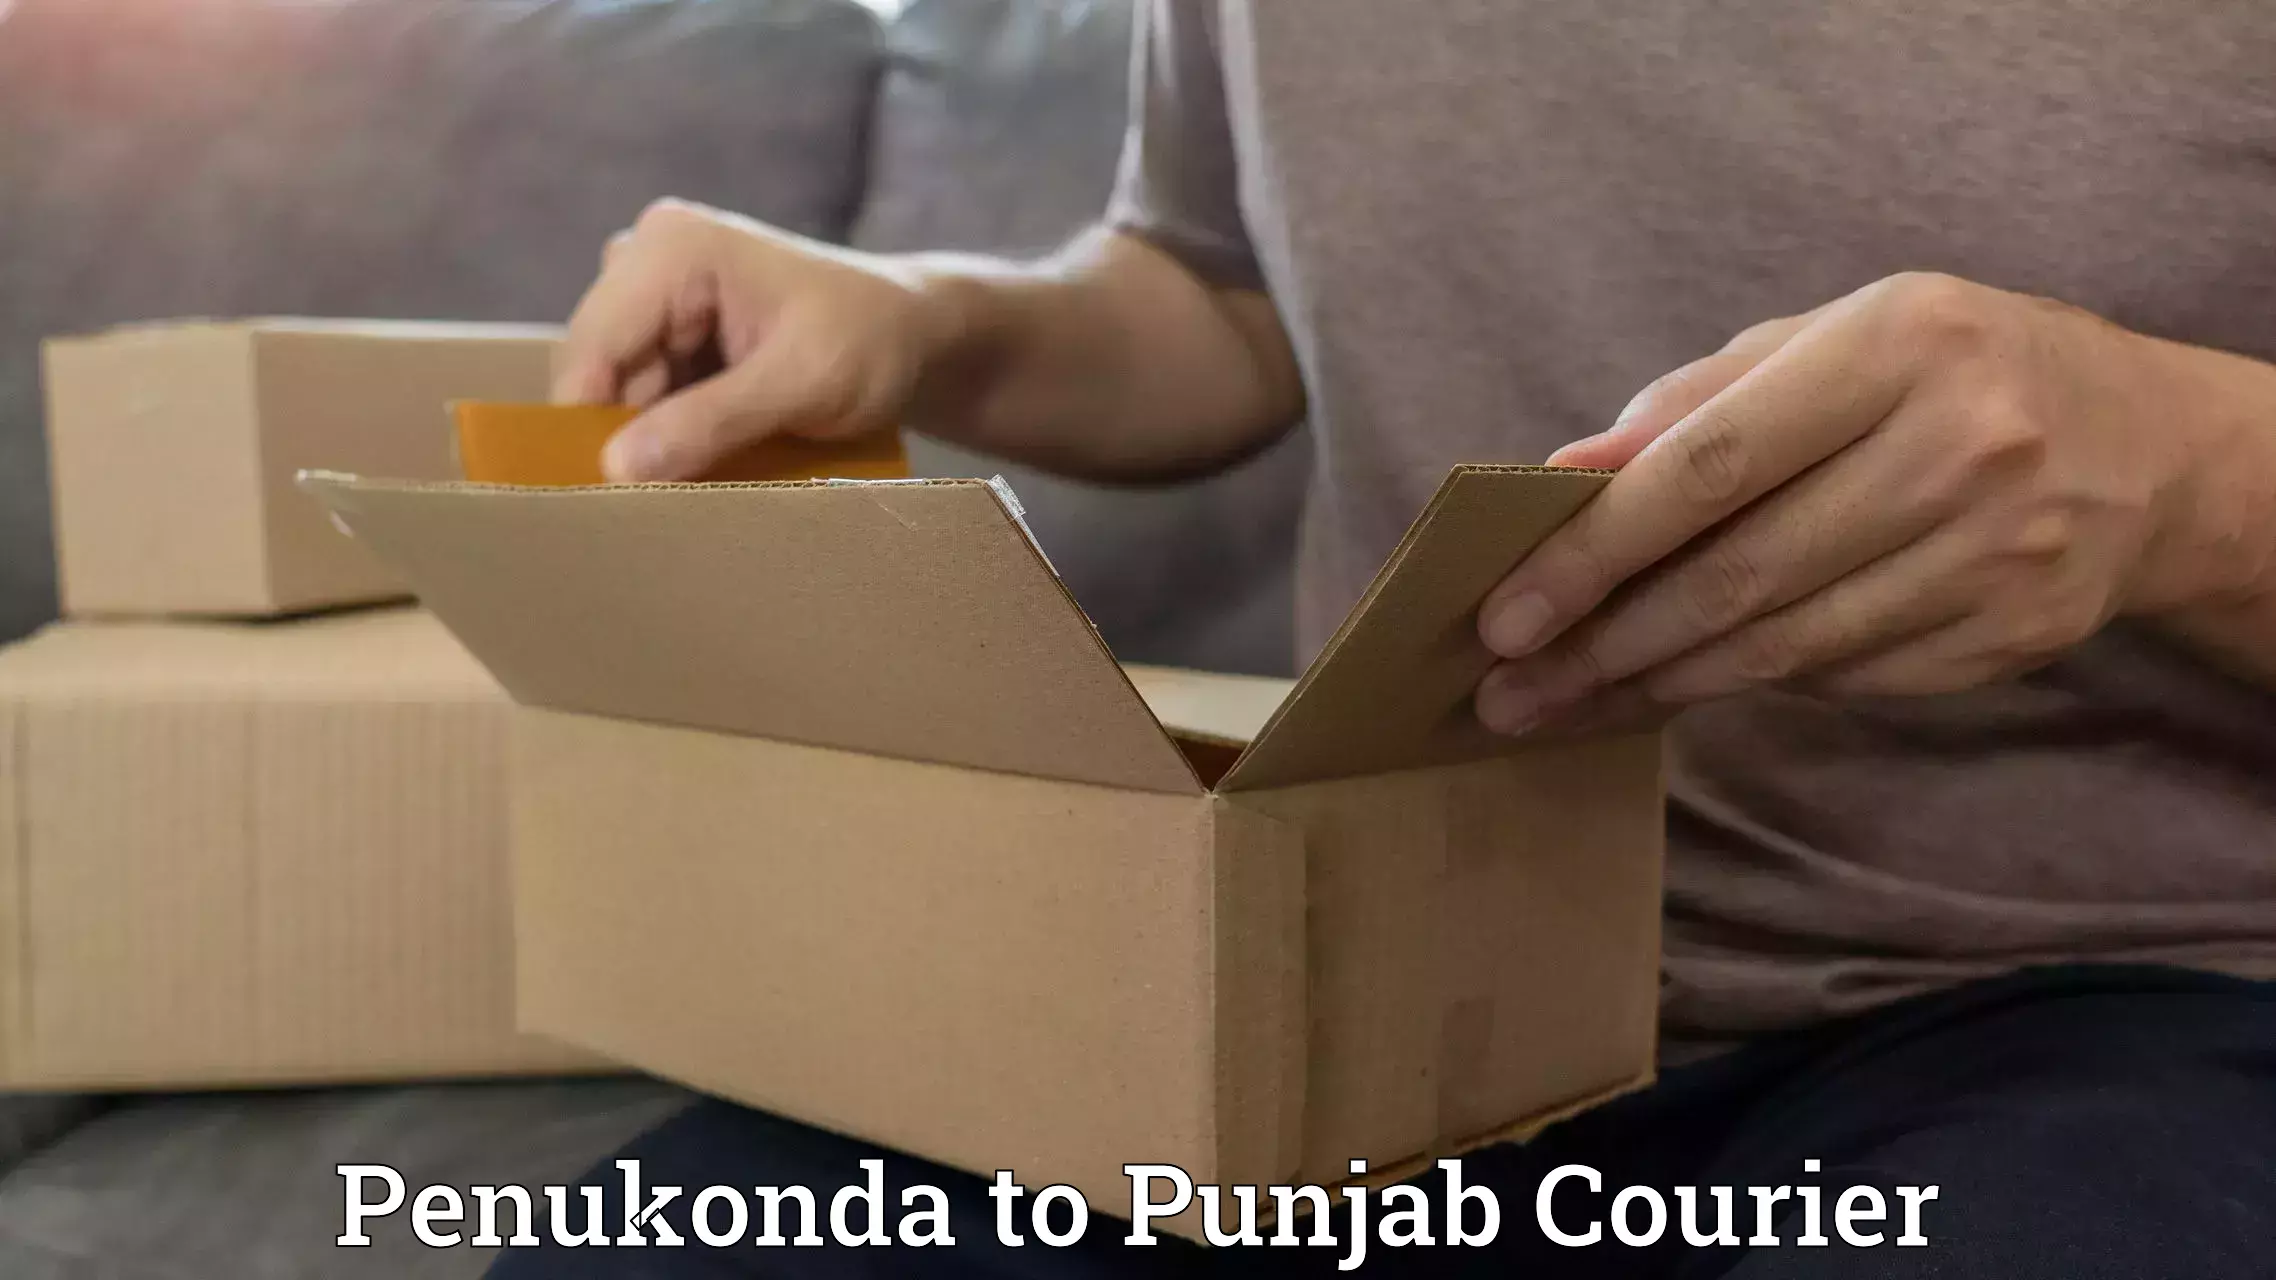 Expedited parcel delivery in Penukonda to Guru Nanak Dev University Amritsar